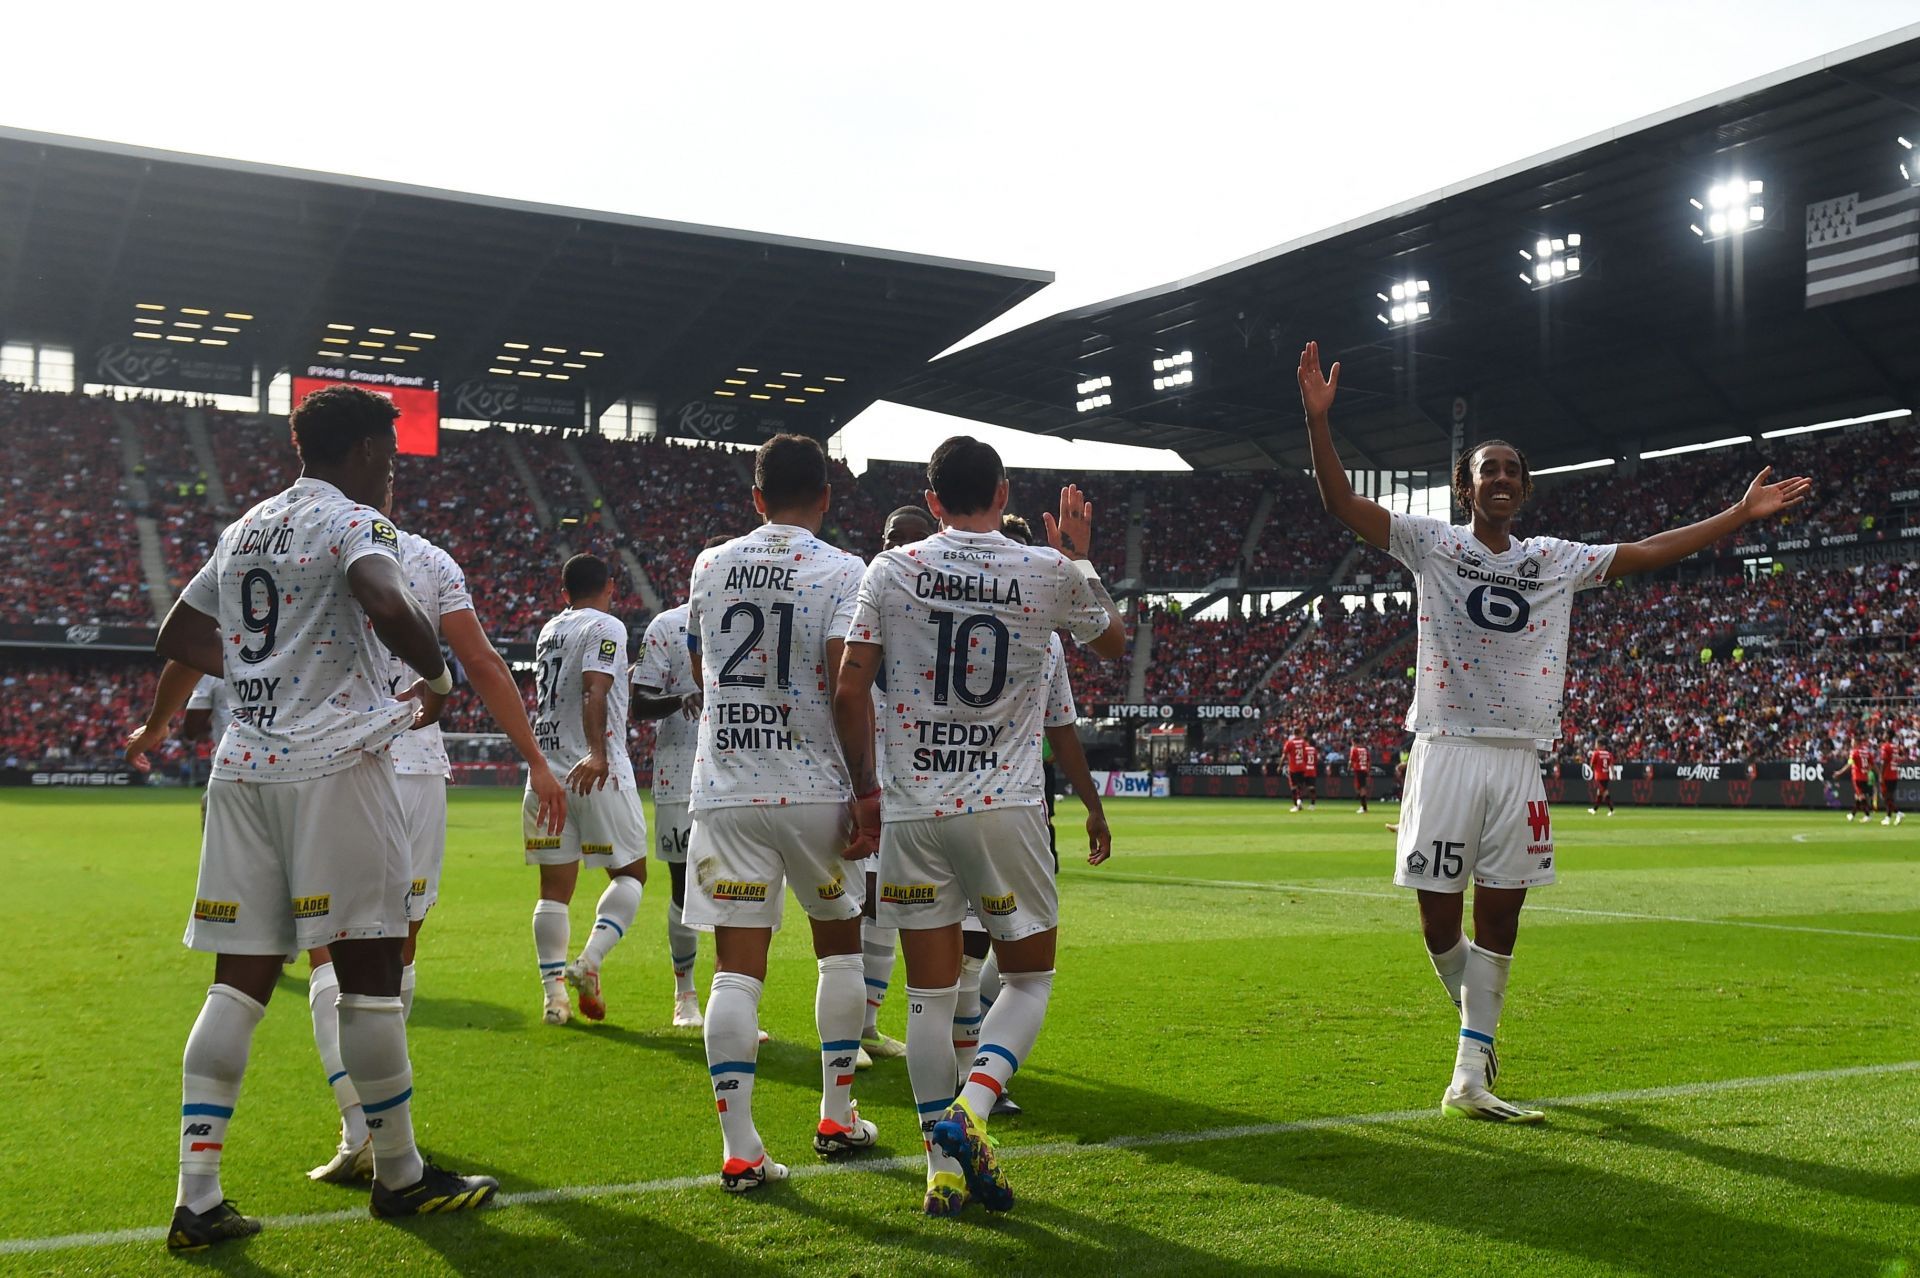 Lille will host Stade de Reims - Ligue 1